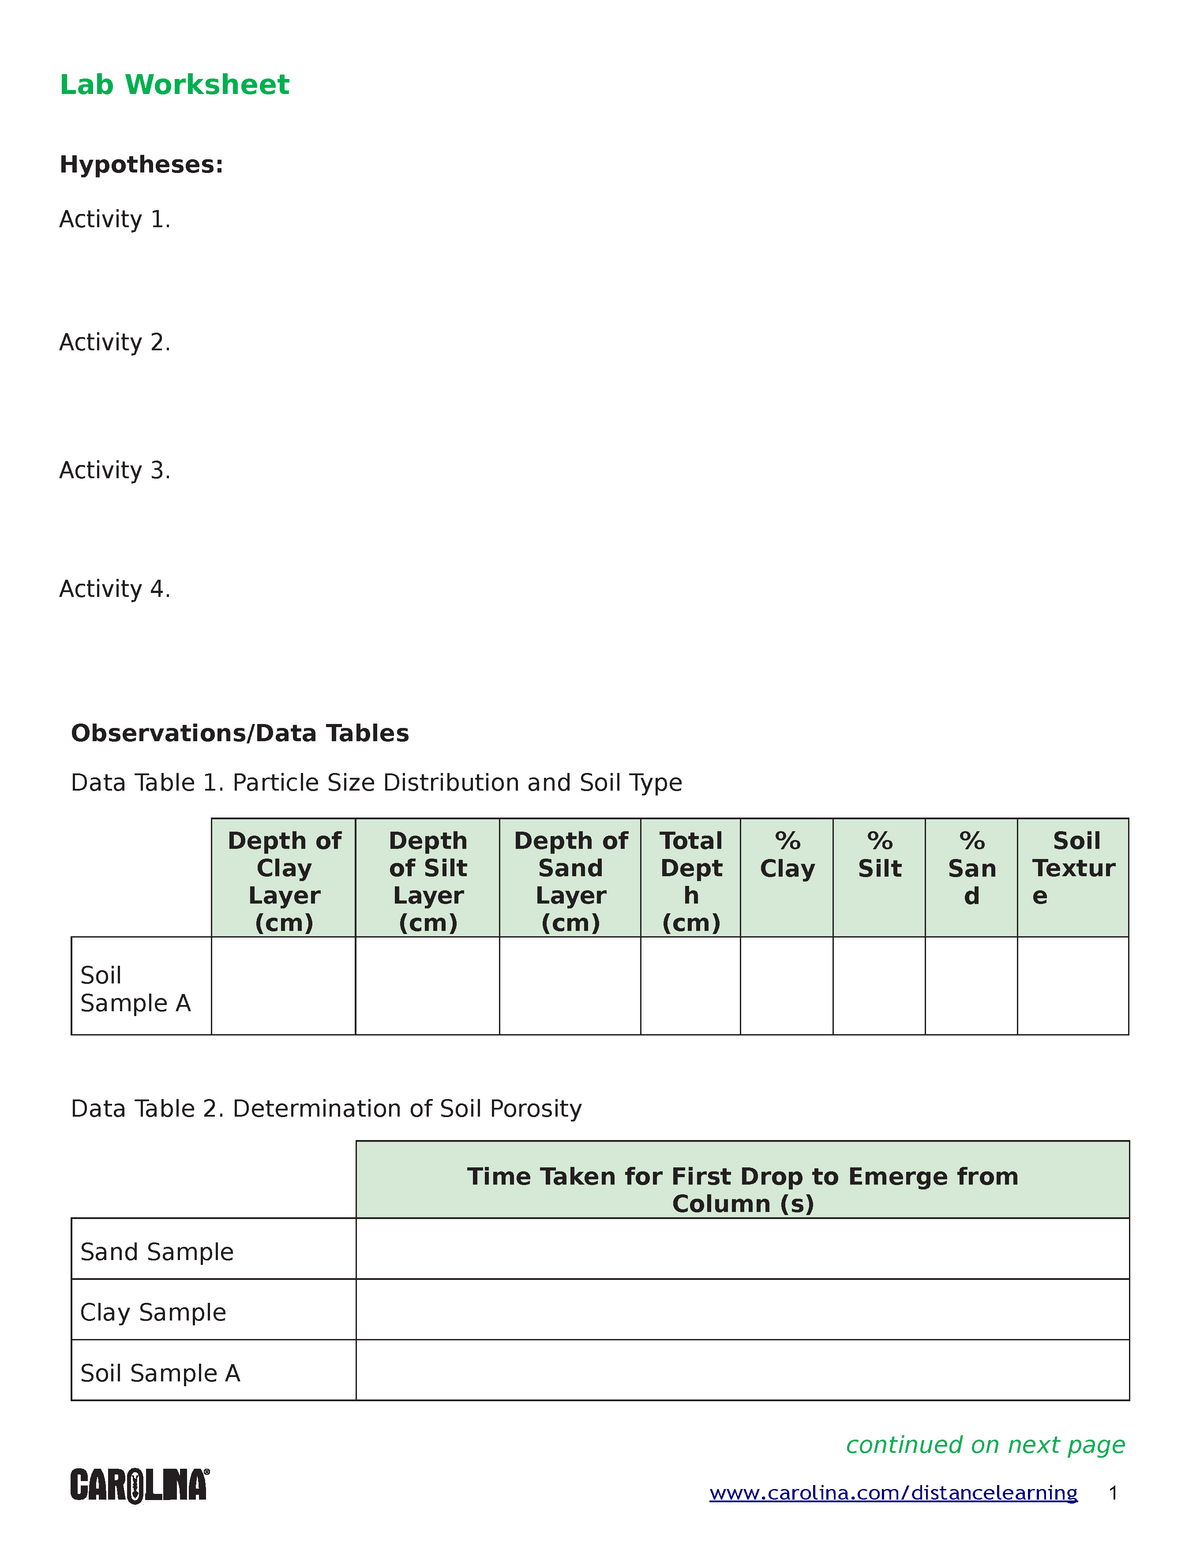 week-two-lab-worksheet-soil-properties-lab-worksheet-hypotheses